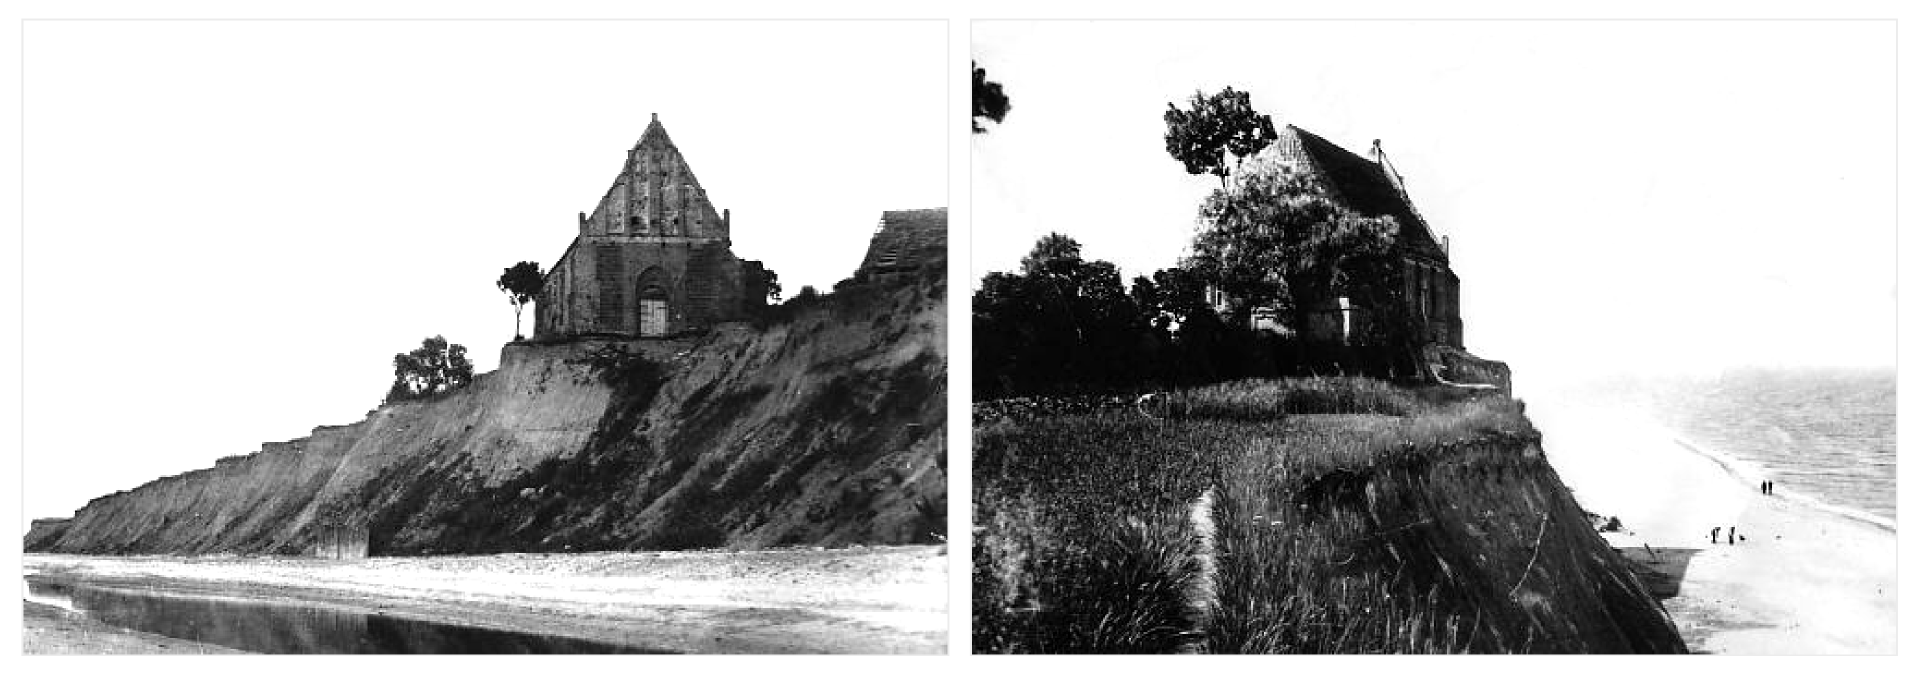 Na dwóch czarno-białych zdjęciach brzeg morski. Na szczycie wydmy budynek kościoła i drzewa. W dole dość szeroka plaża i morze.